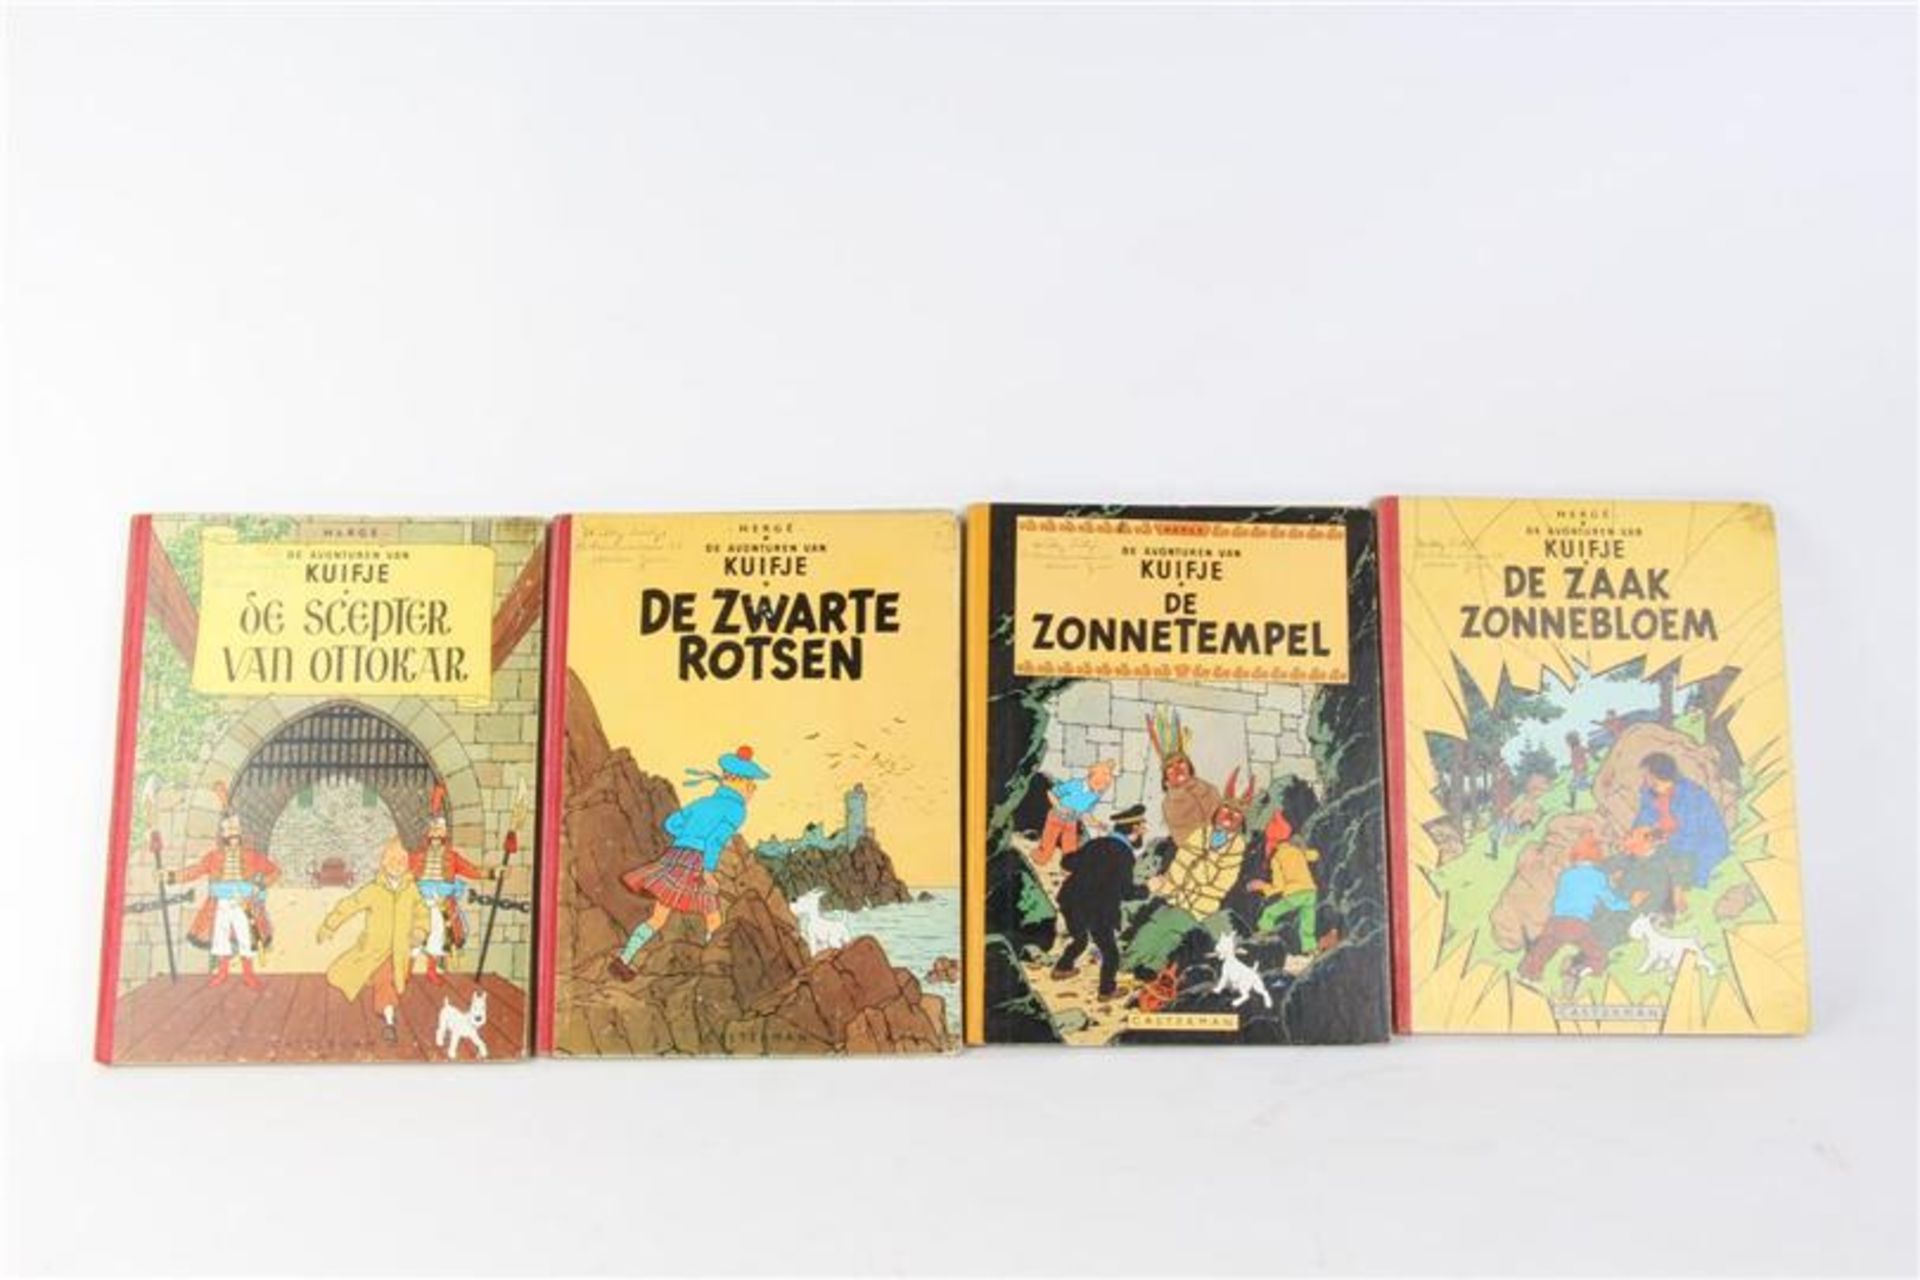 De avonturen van Kuifje, Hergé, uitgeverij Casterman, 7 hardcovers en drie softcovers. - Bild 10 aus 17